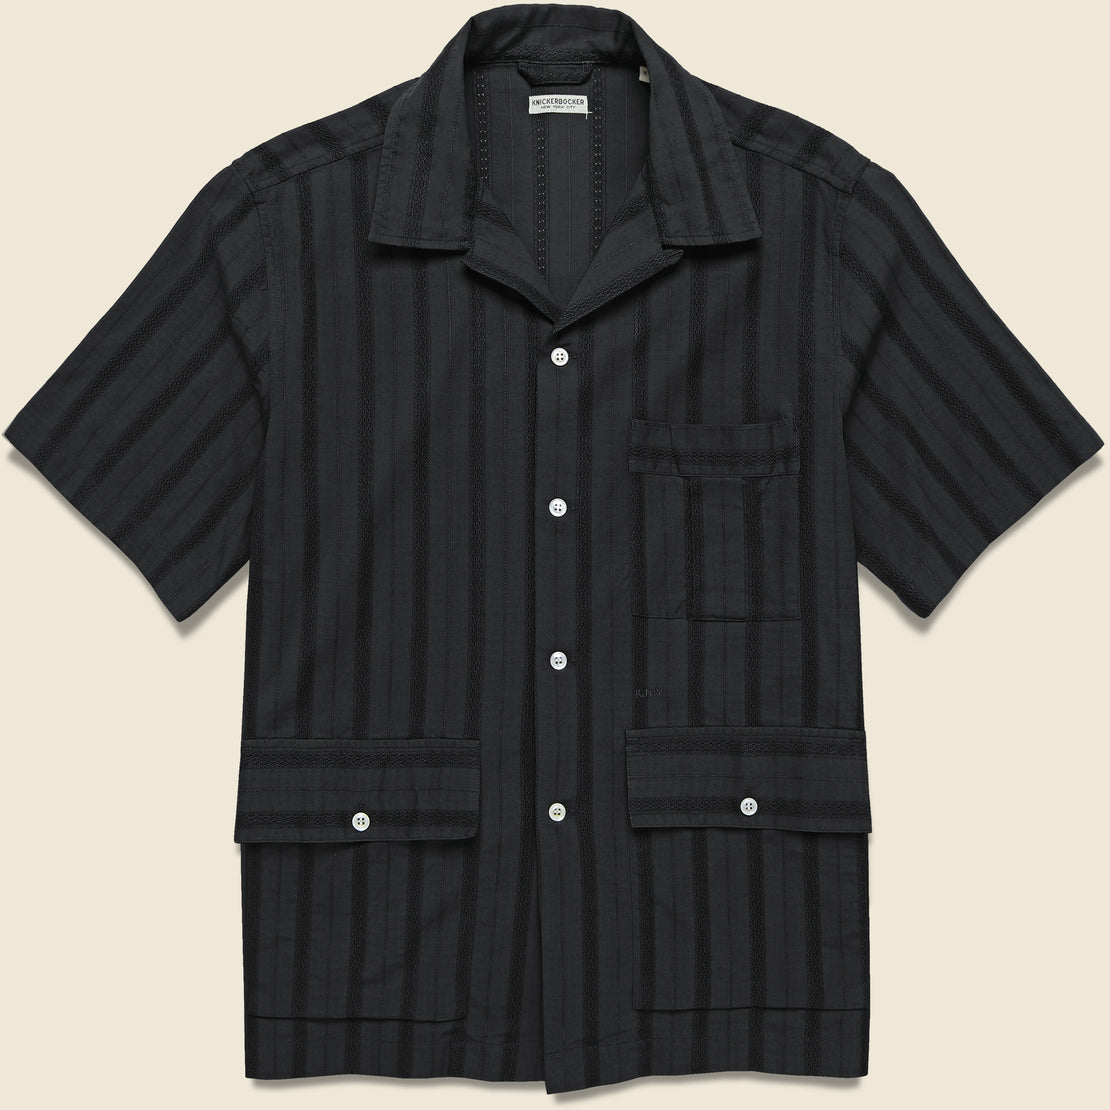 Knickerbocker Hemingway Shirt - Black